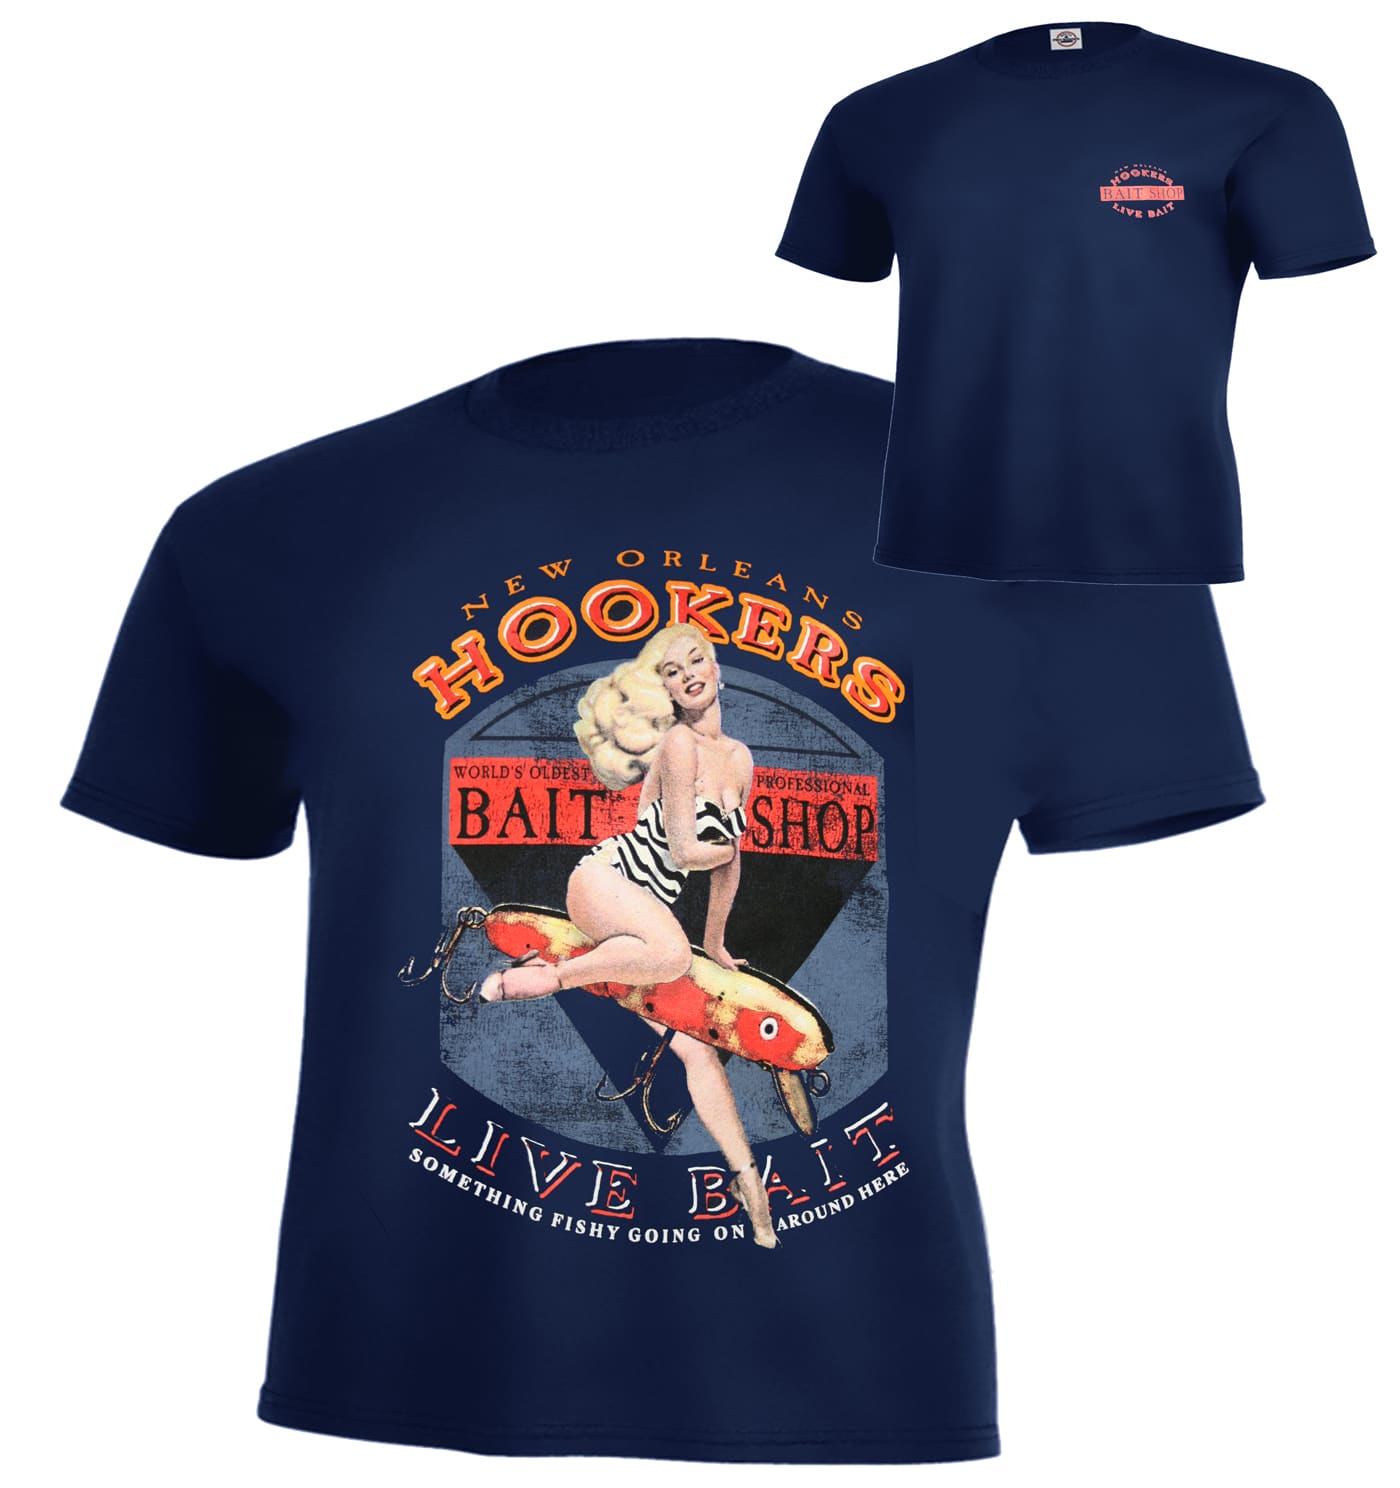 Dirty Hooker Louisiana T-Shirt T-Shirt / Dark Heather Grey / XXXXL